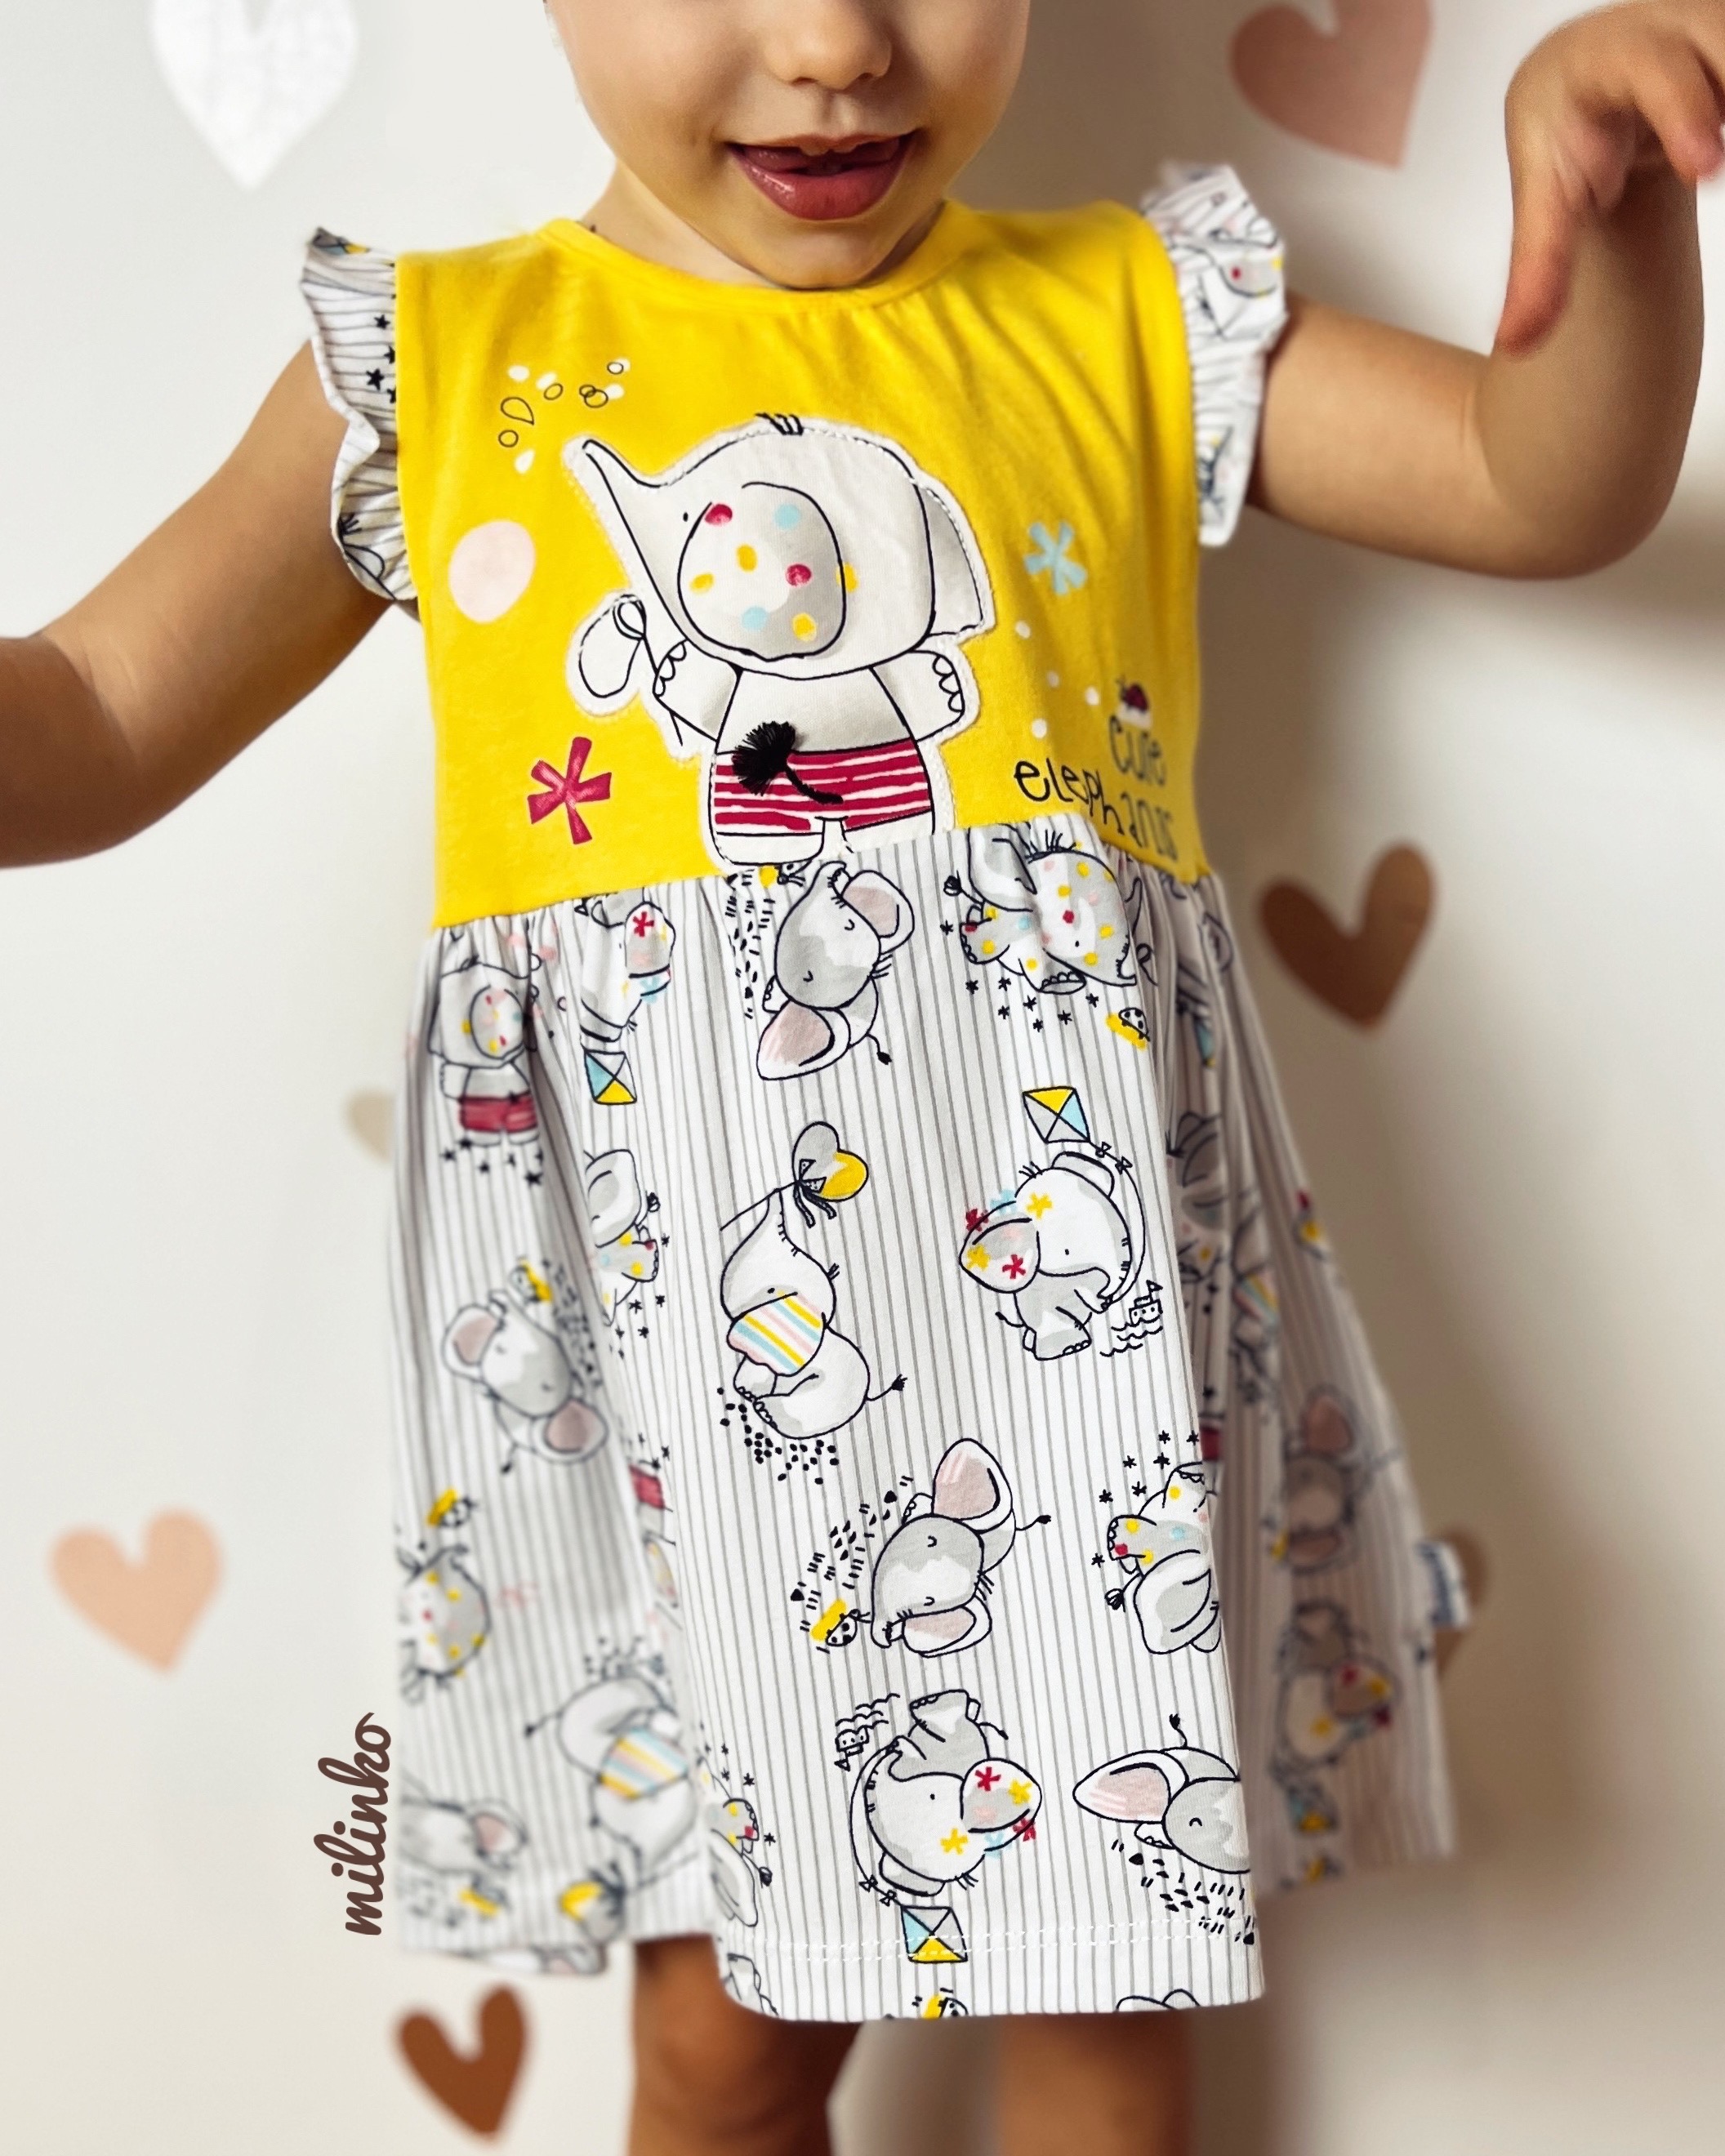 Miniworld Dievčenské letné šaty- Cute Elephants, žlté veľkosť: 86 (12-18m)